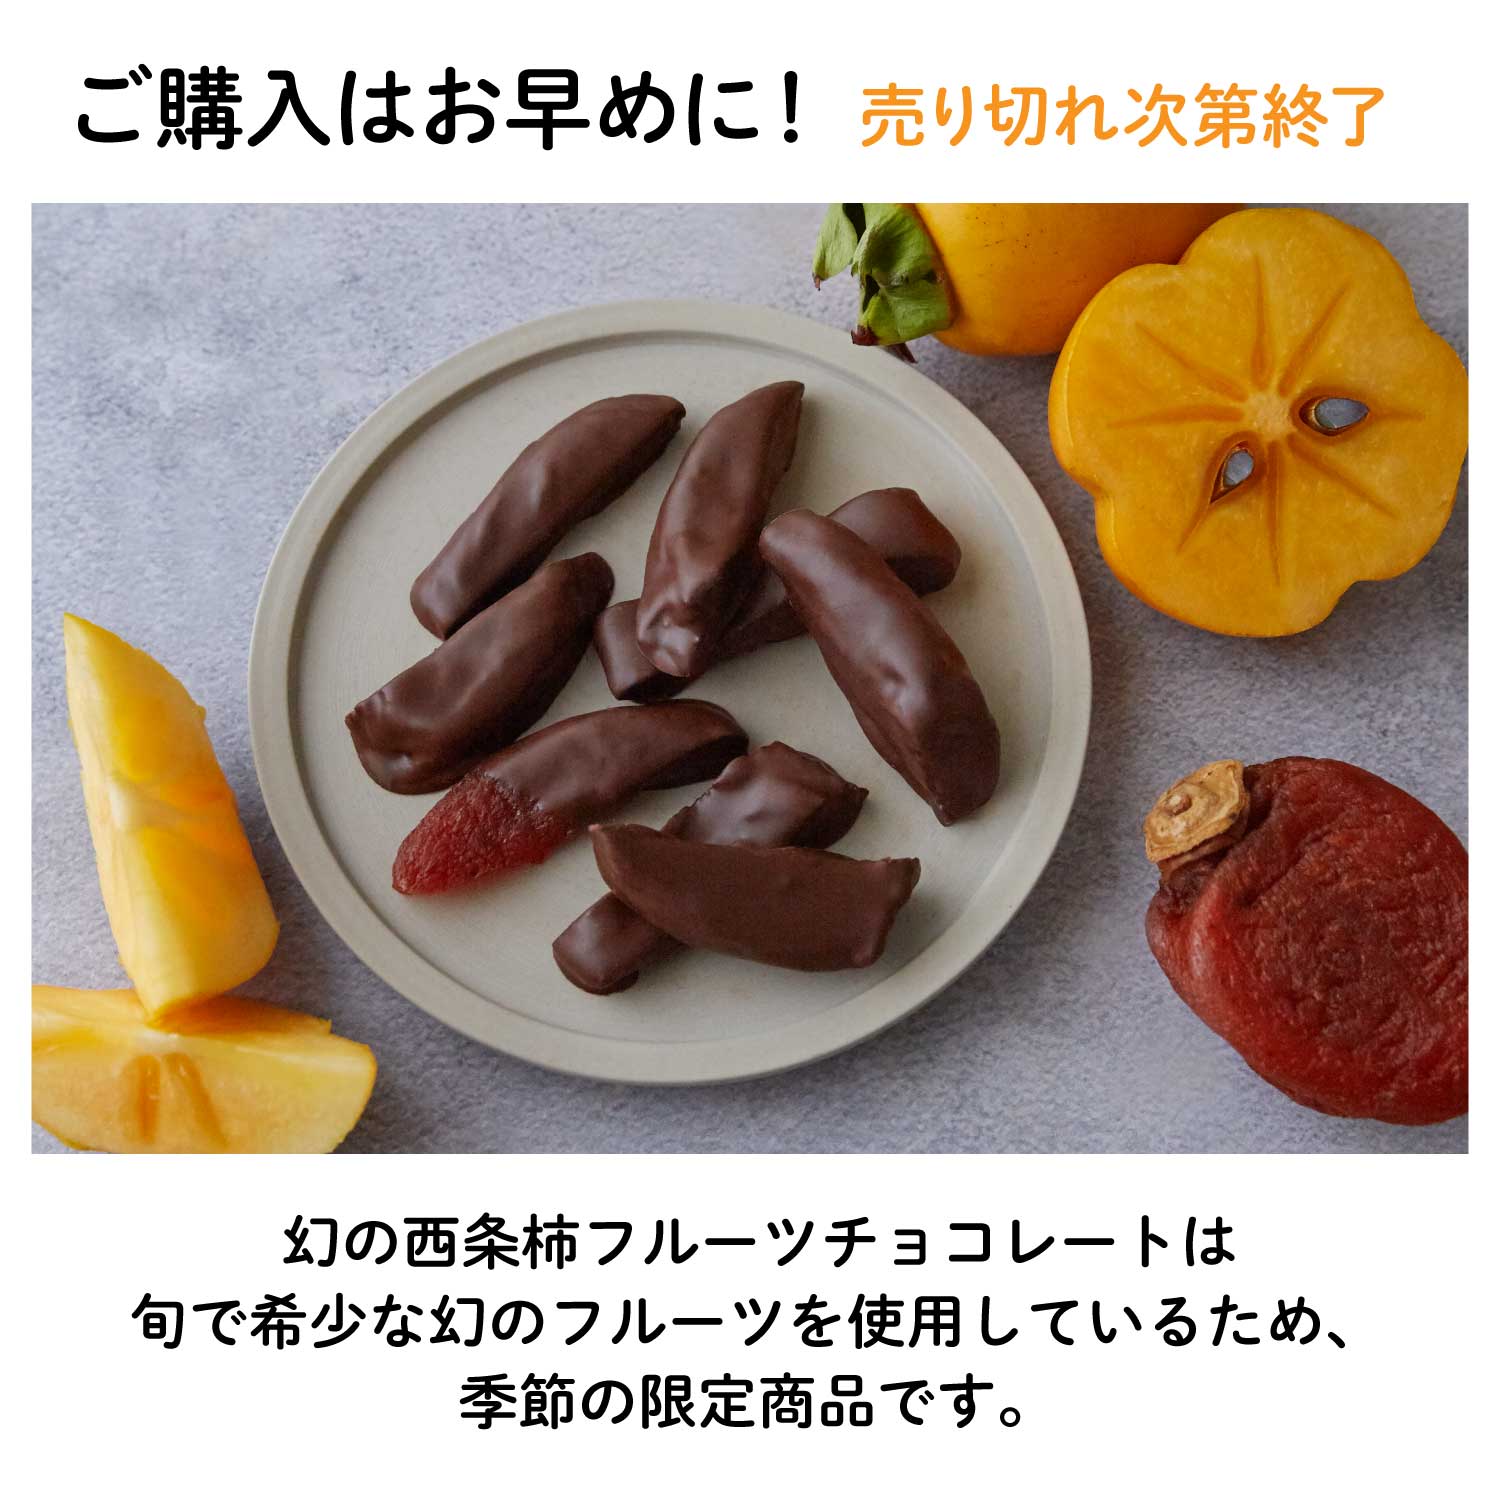 幻の西条柿フルーツチョコレート